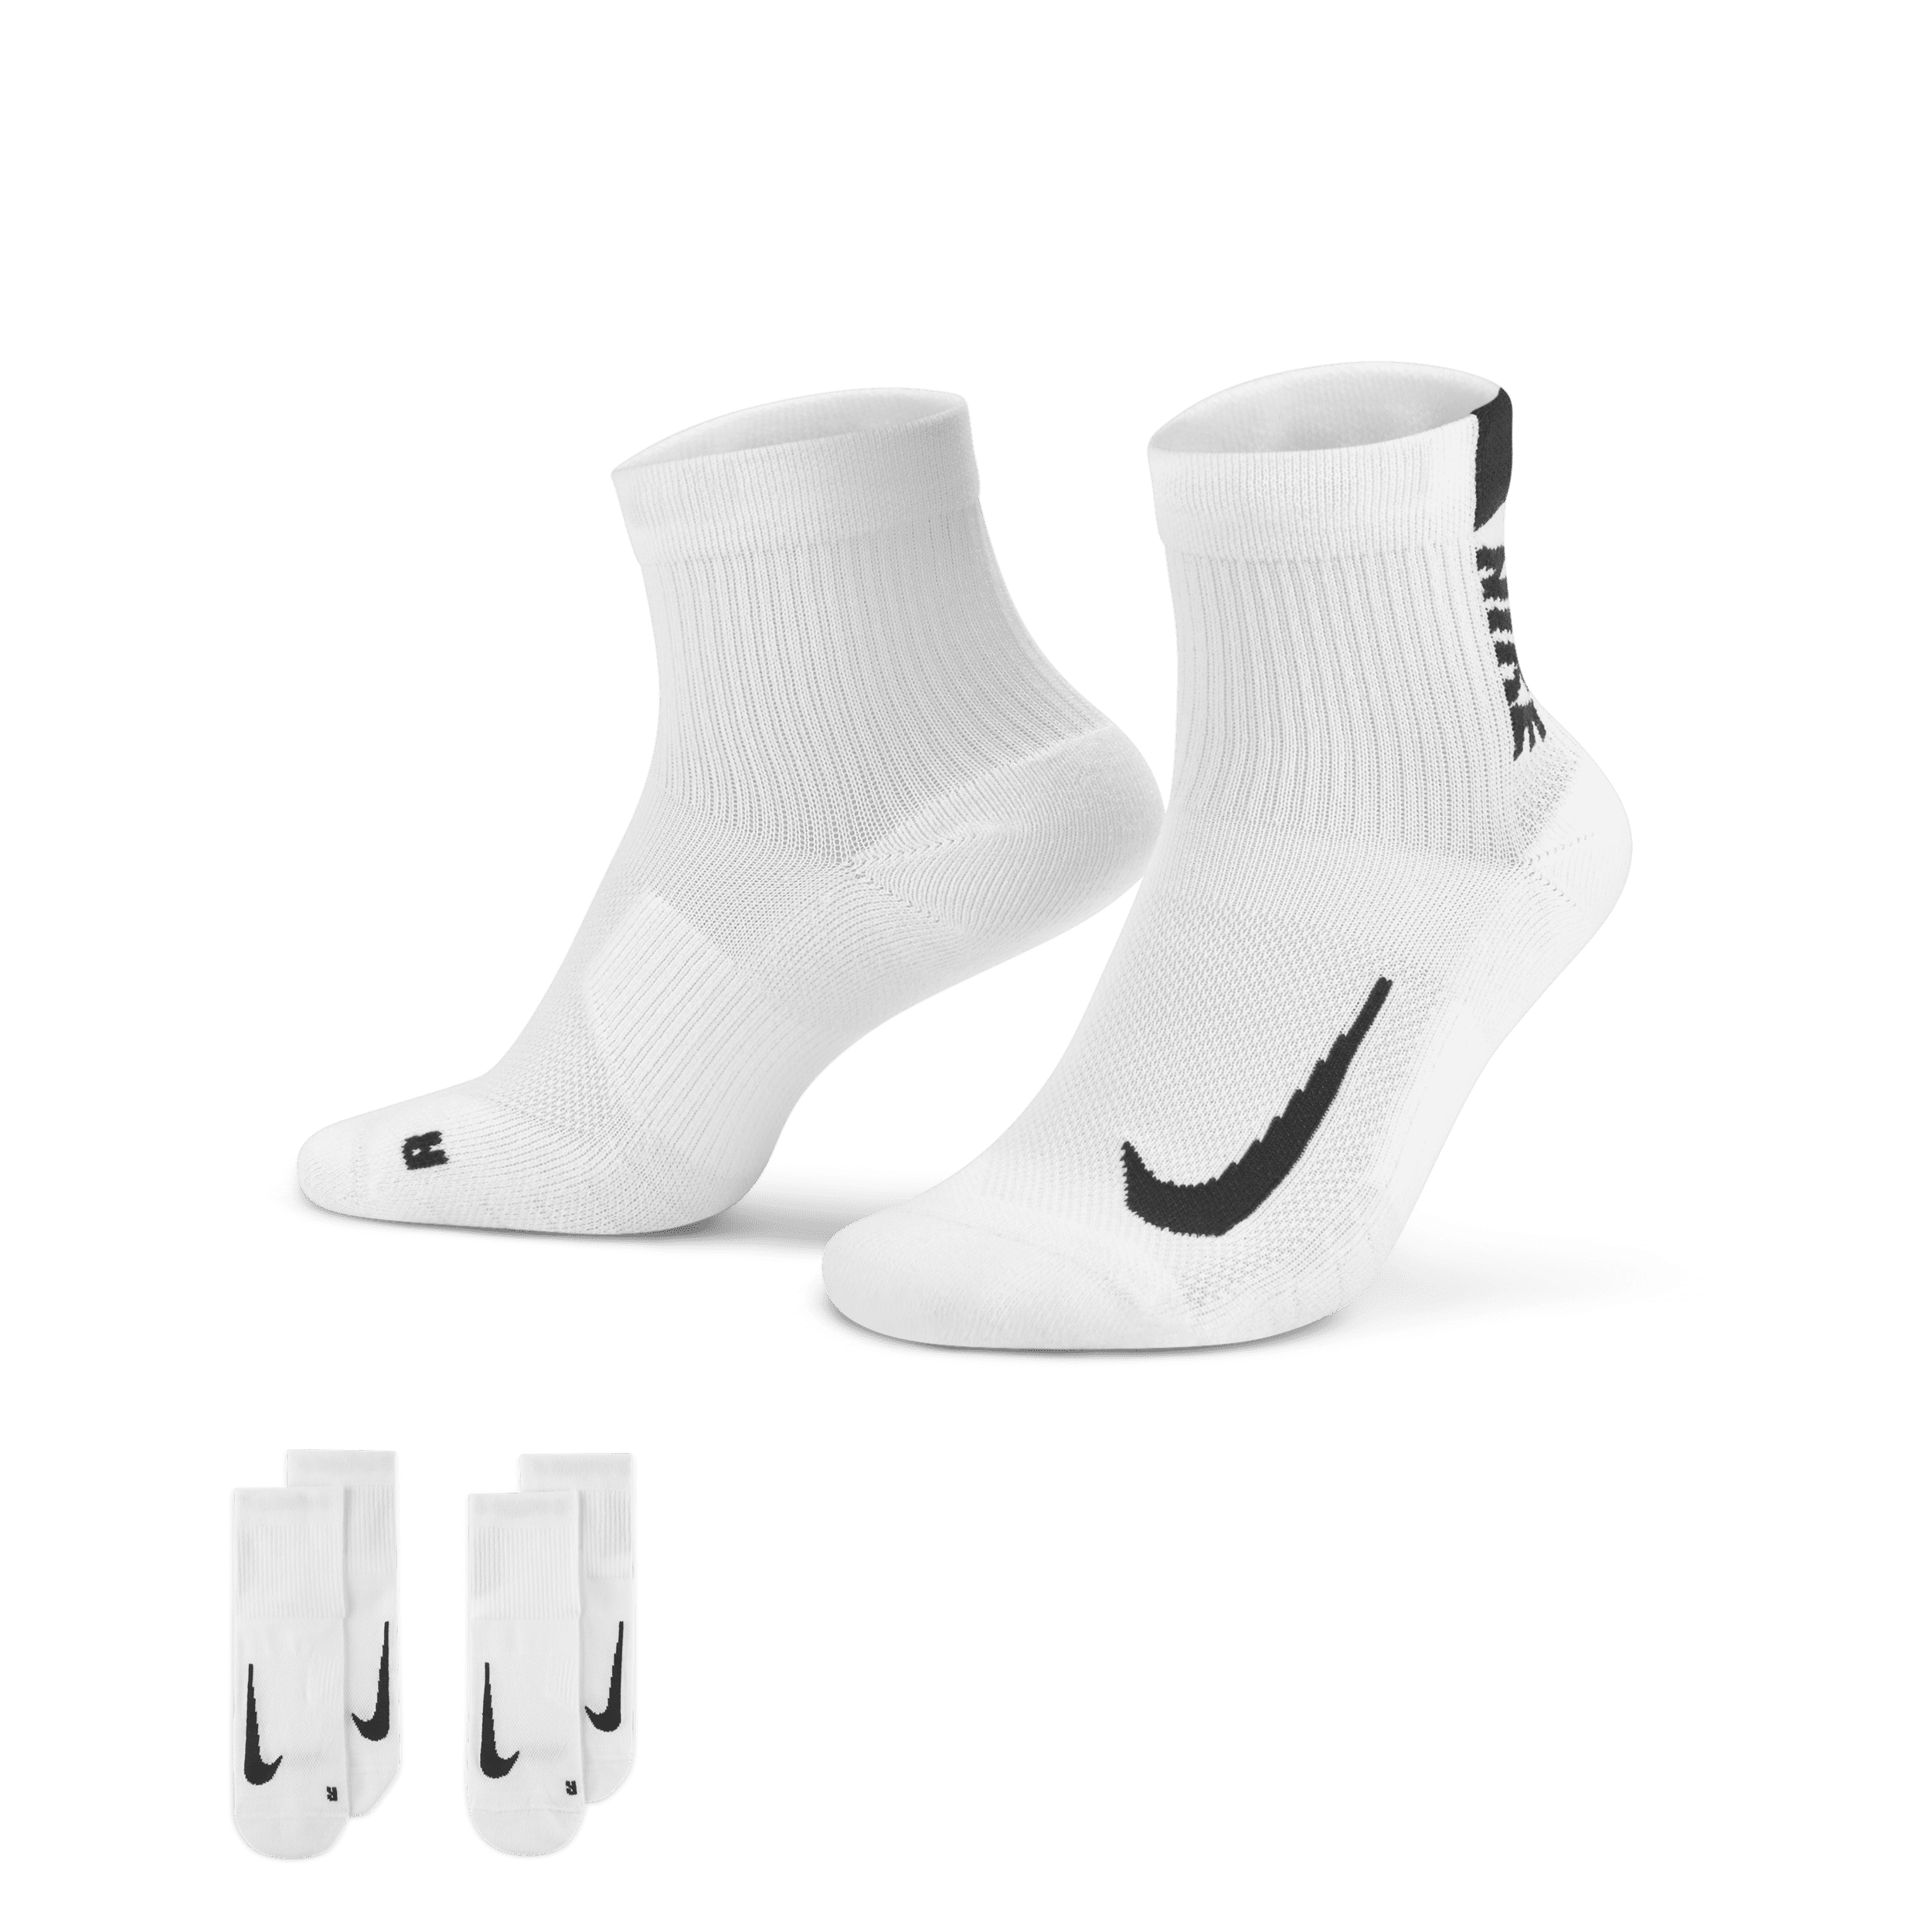 Nike Multiplier hardloopenkelsokken (2 paar) - Wit